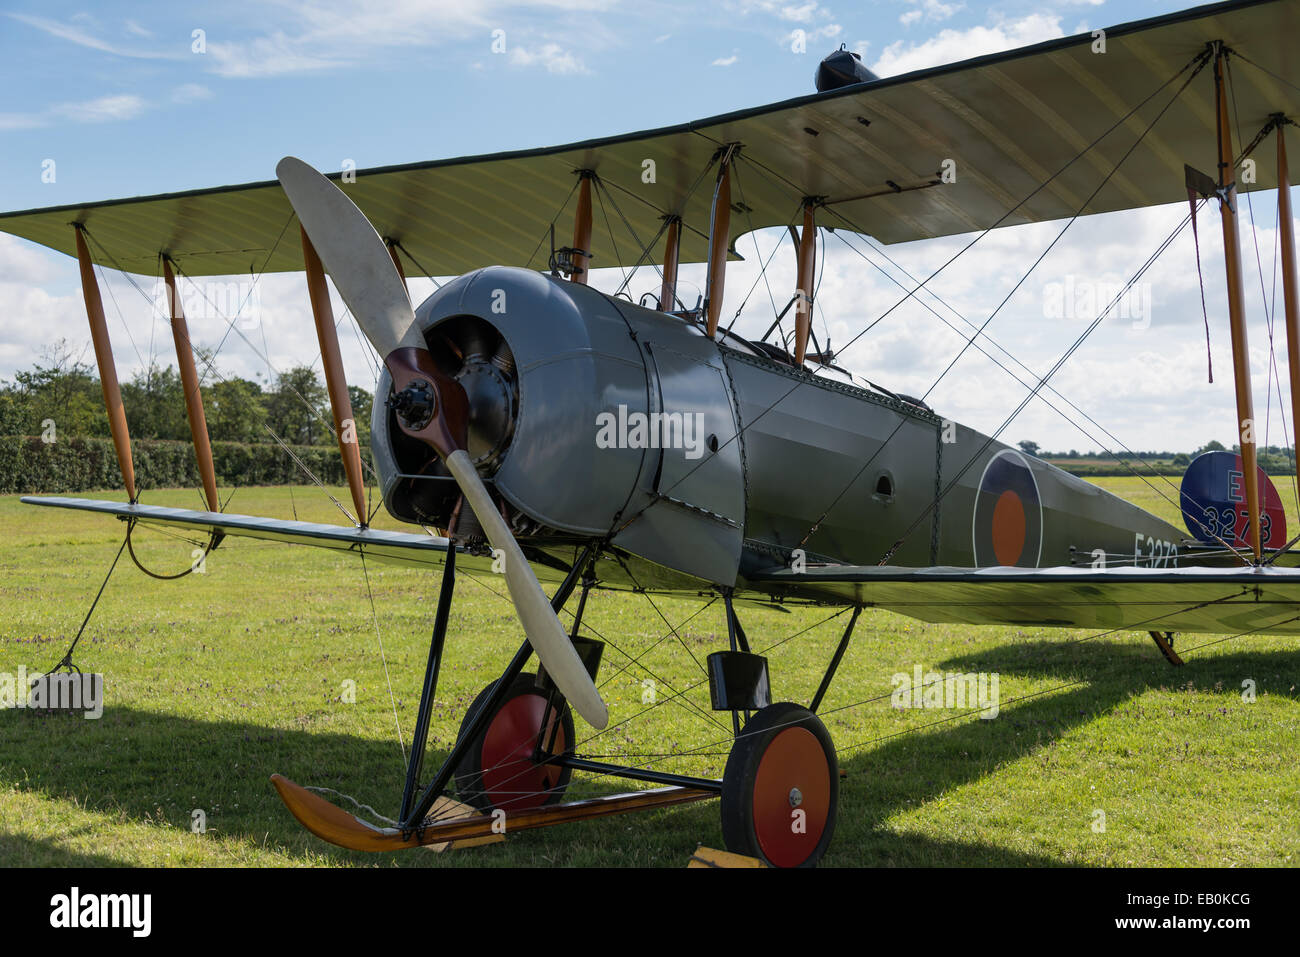 Biggleswade, UK - 29 juin 2014 : des avions d'entraînement vintage britannique Avro 504K. 1918 à la Shuttleworth Collection air show. Banque D'Images